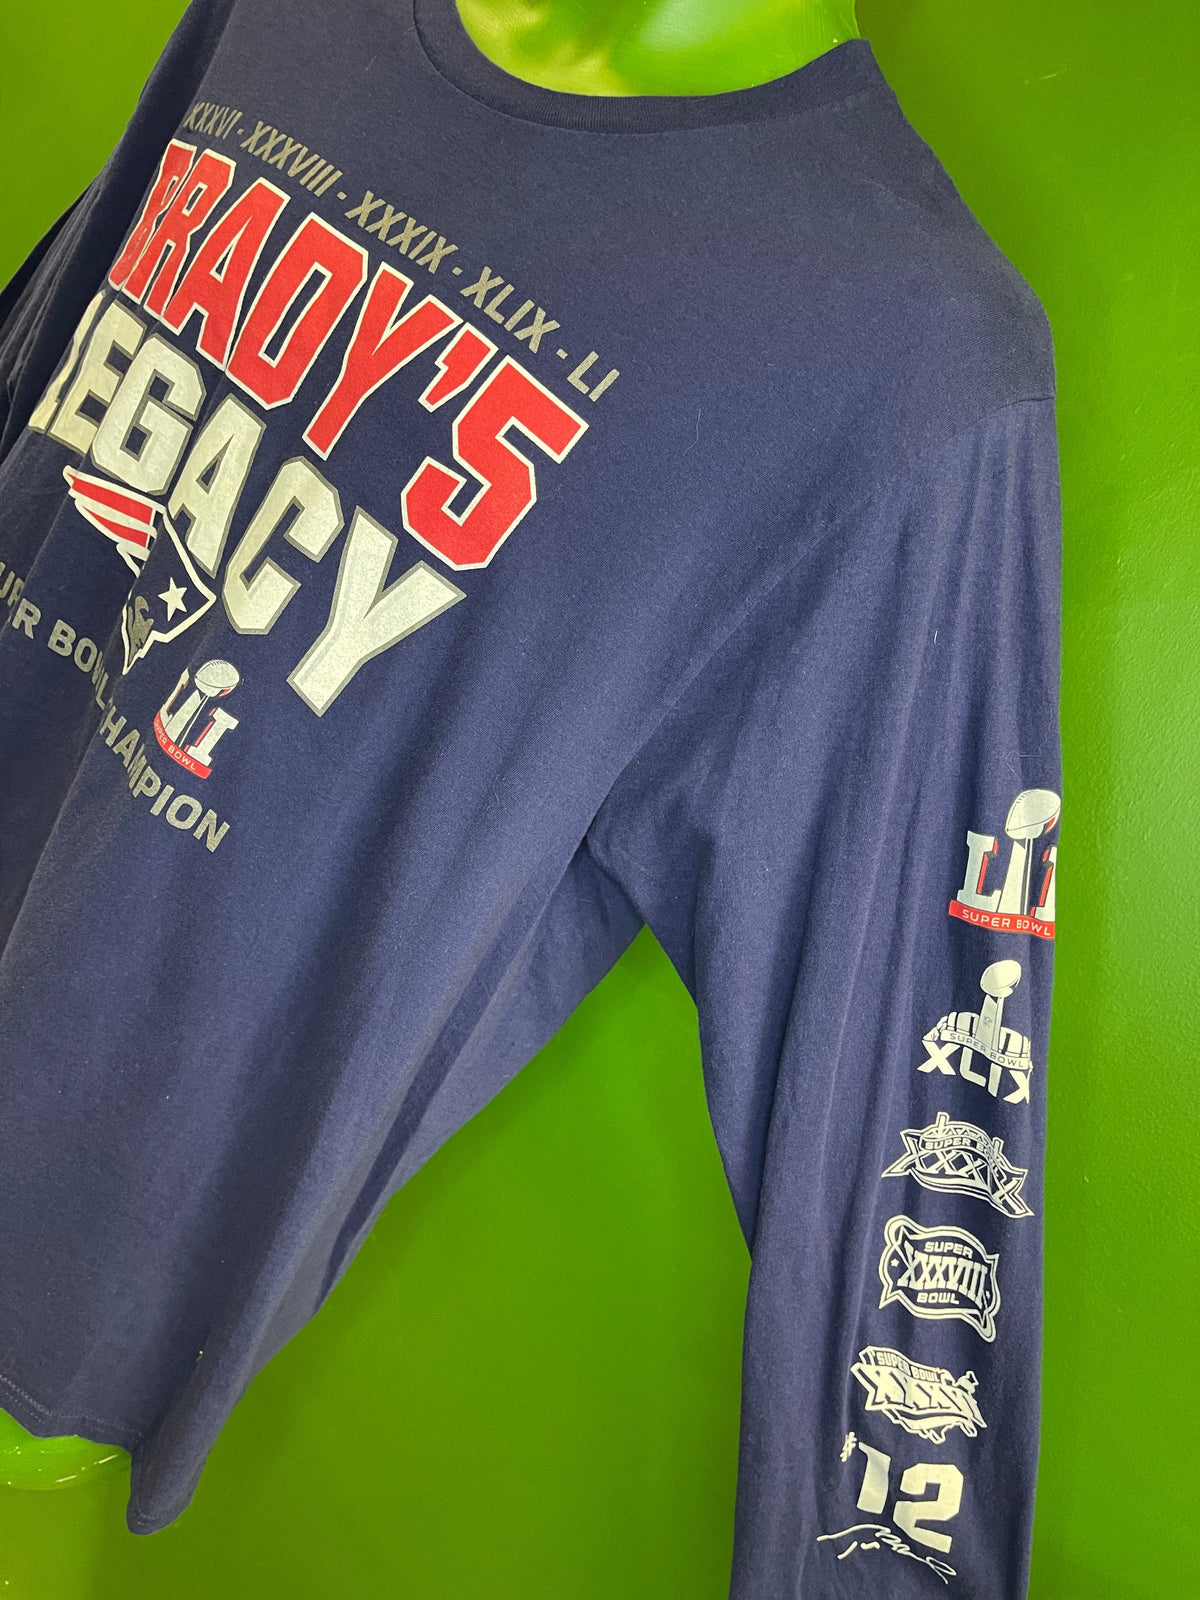 NFL New England Patriots Pro Line "Brady's Legacy" L/S T-Shirt Men's Large